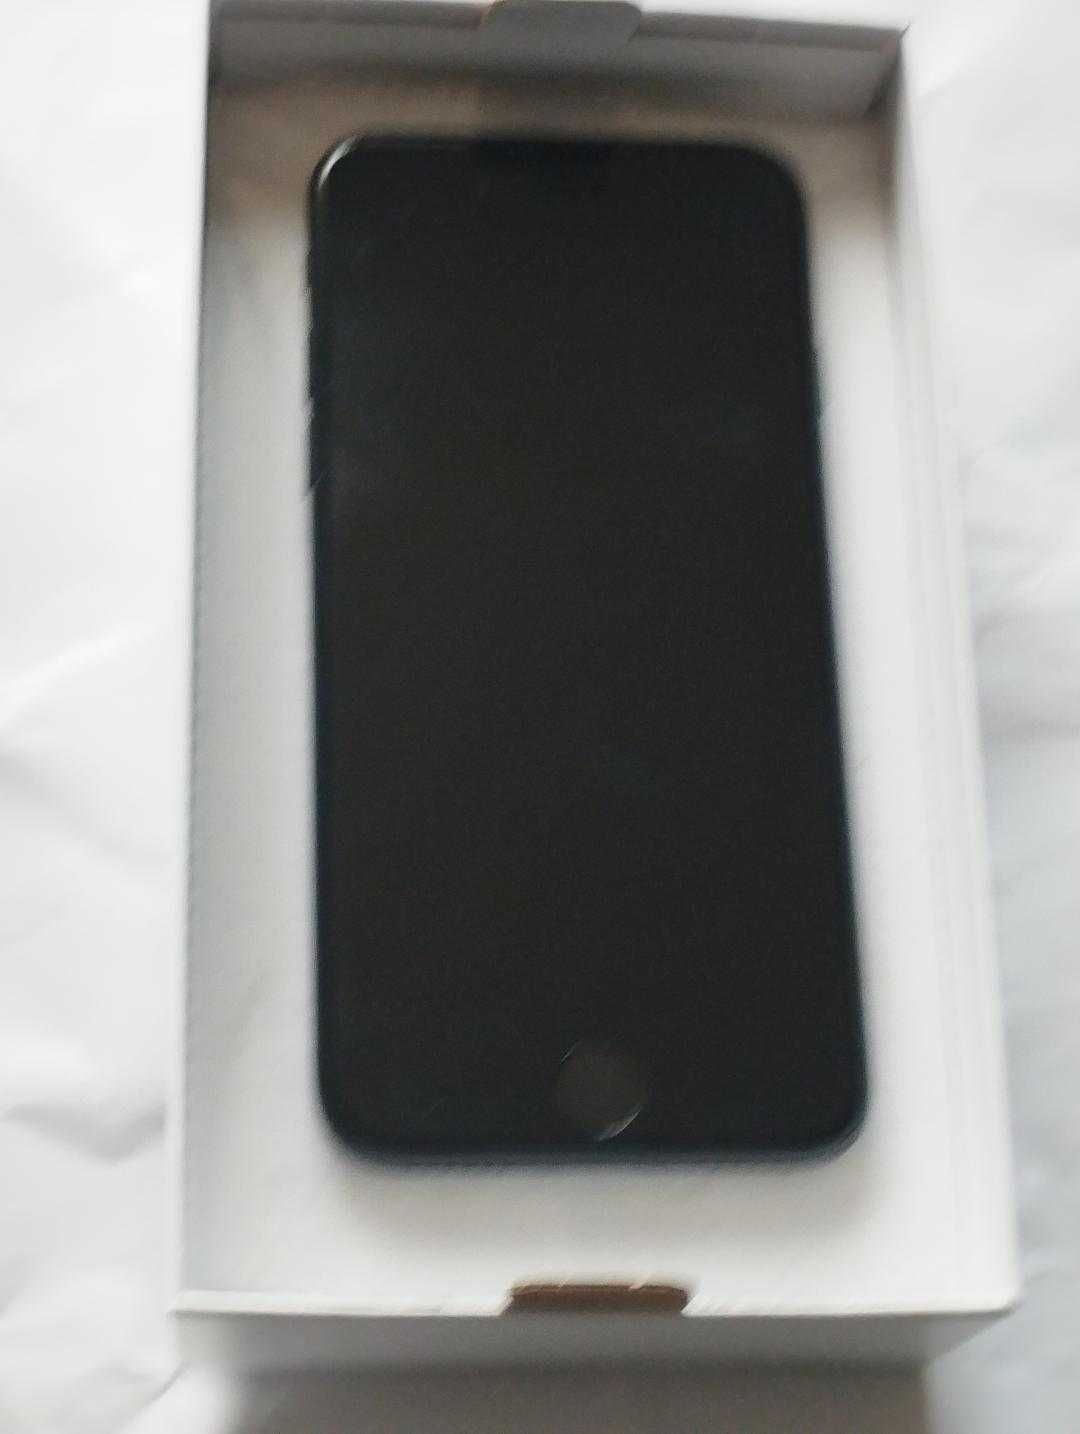 iPhone 7 32GB,sigilat in cutie plus husa cadou noua,sigilata in tipla